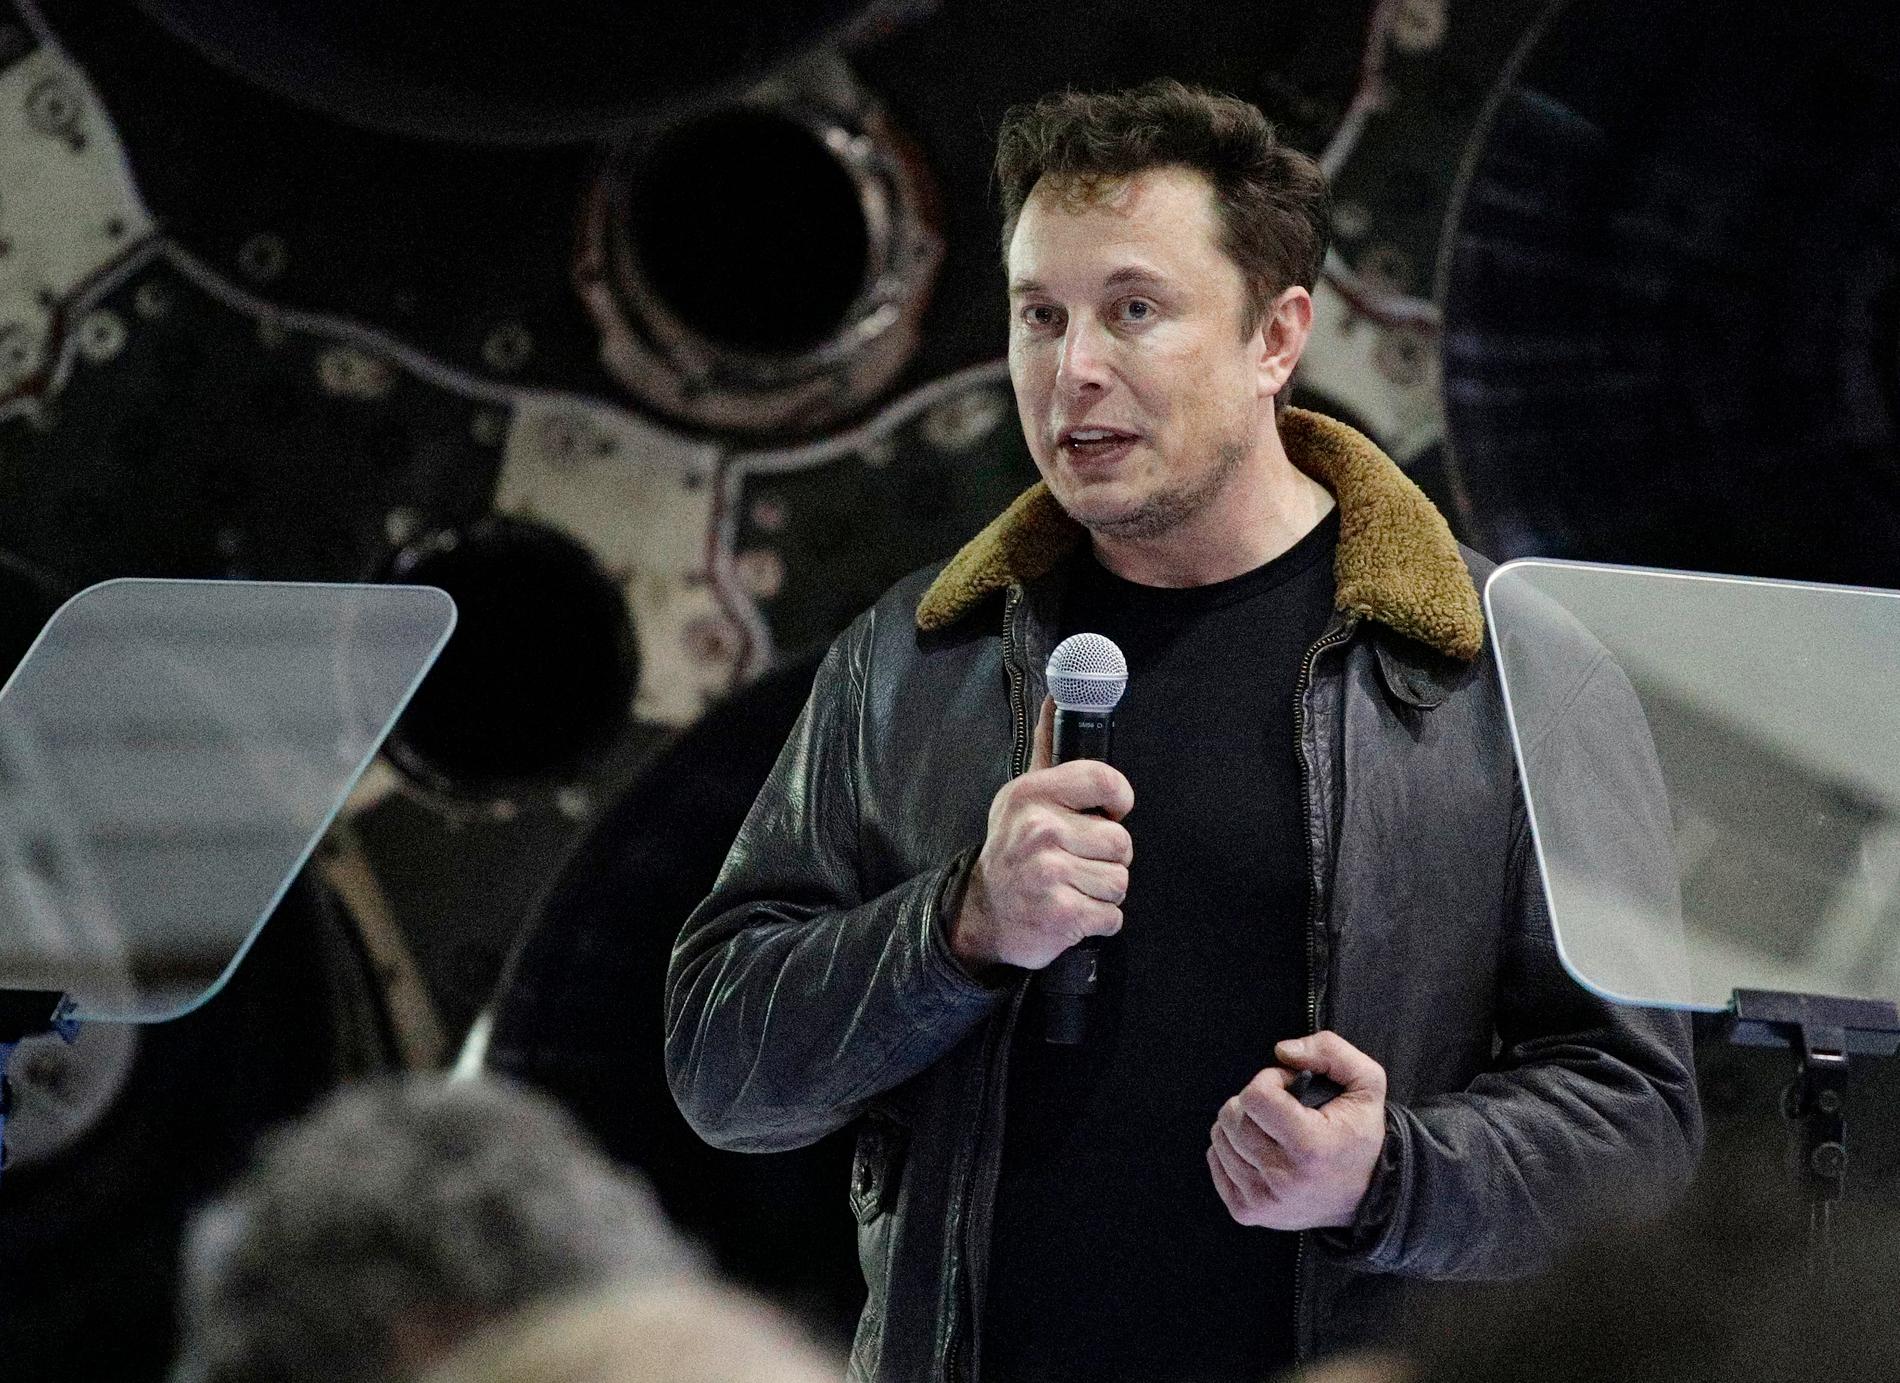 Space X-grundaren Elon Musk har blivit känd som en sann visionär. 2002 startade han sitt rymdföretag.